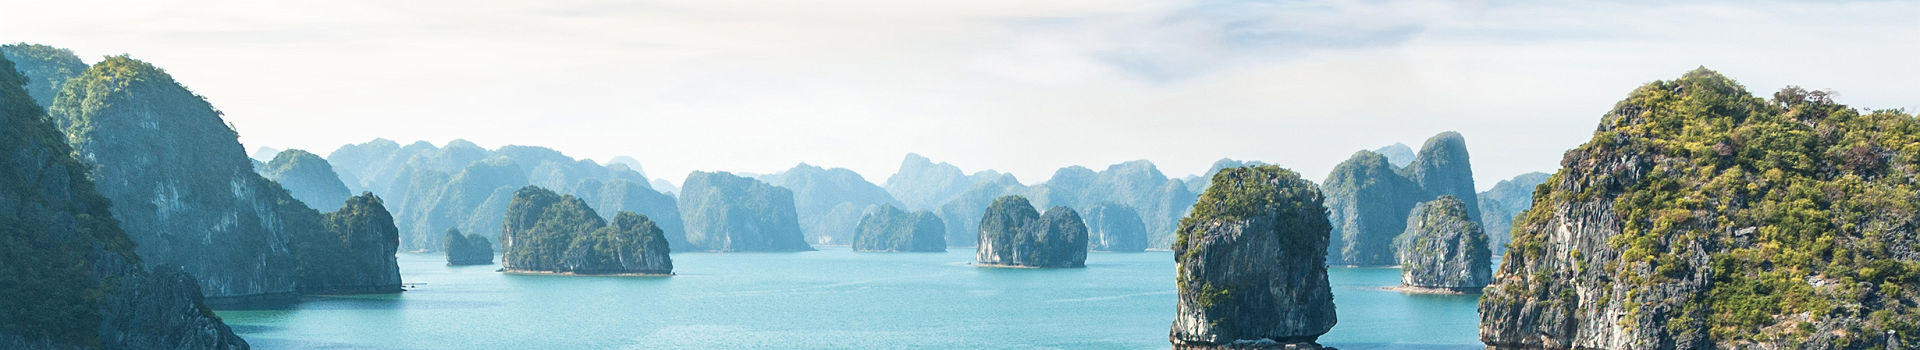 Vietnam - Bateaux de transport de passagers naviguent dans la baie Halong